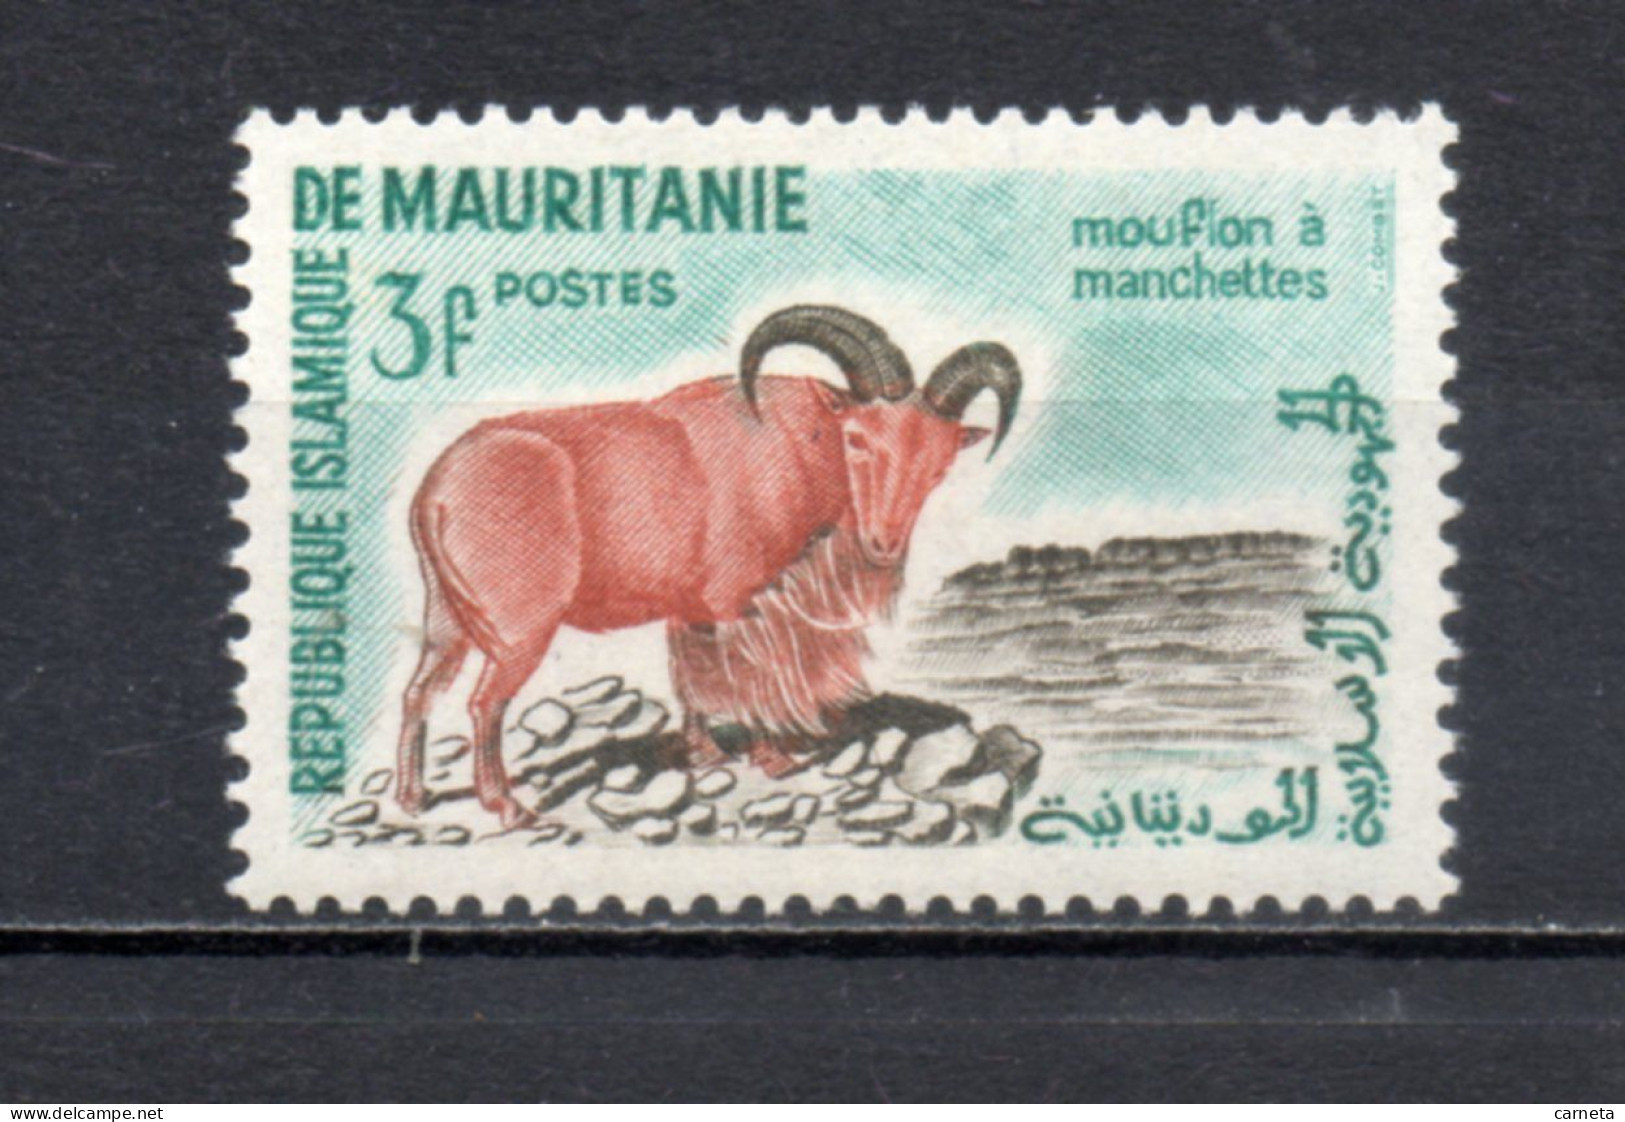 MAURITANIE  N° 143   NEUF SANS CHARNIERE   COTE 0.80€    ANIMAUX FAUNE - Mauritania (1960-...)